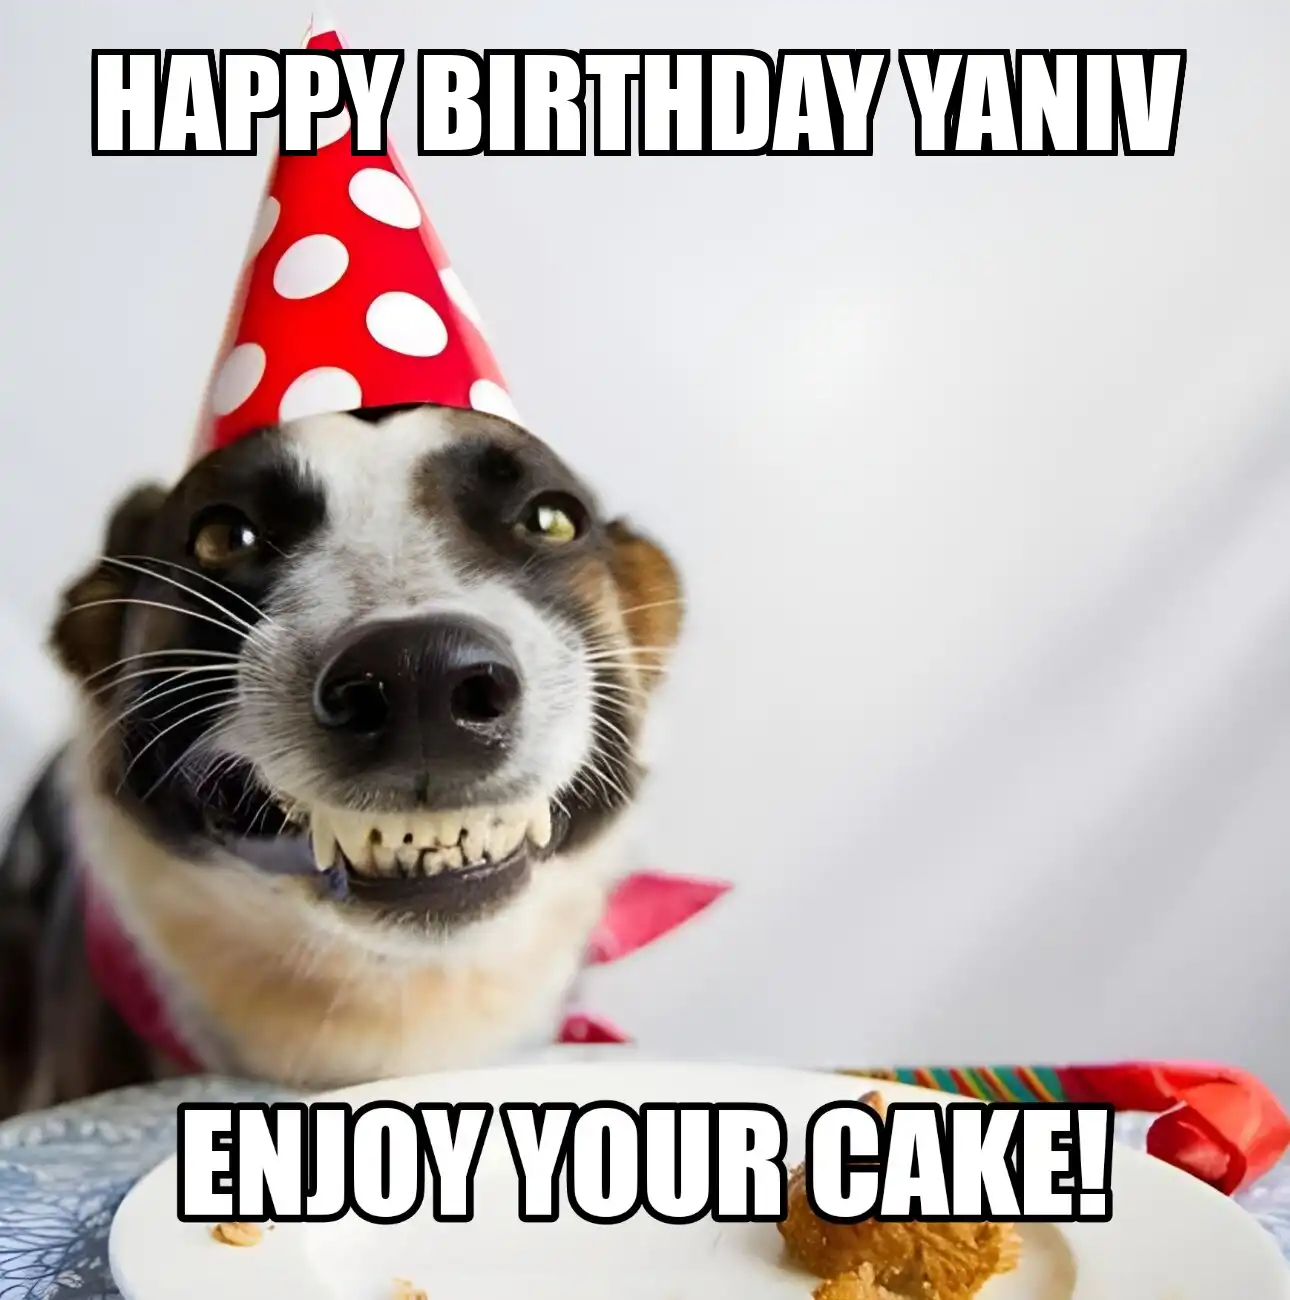 Happy Birthday Yaniv Enjoy Your Cake Dog Meme